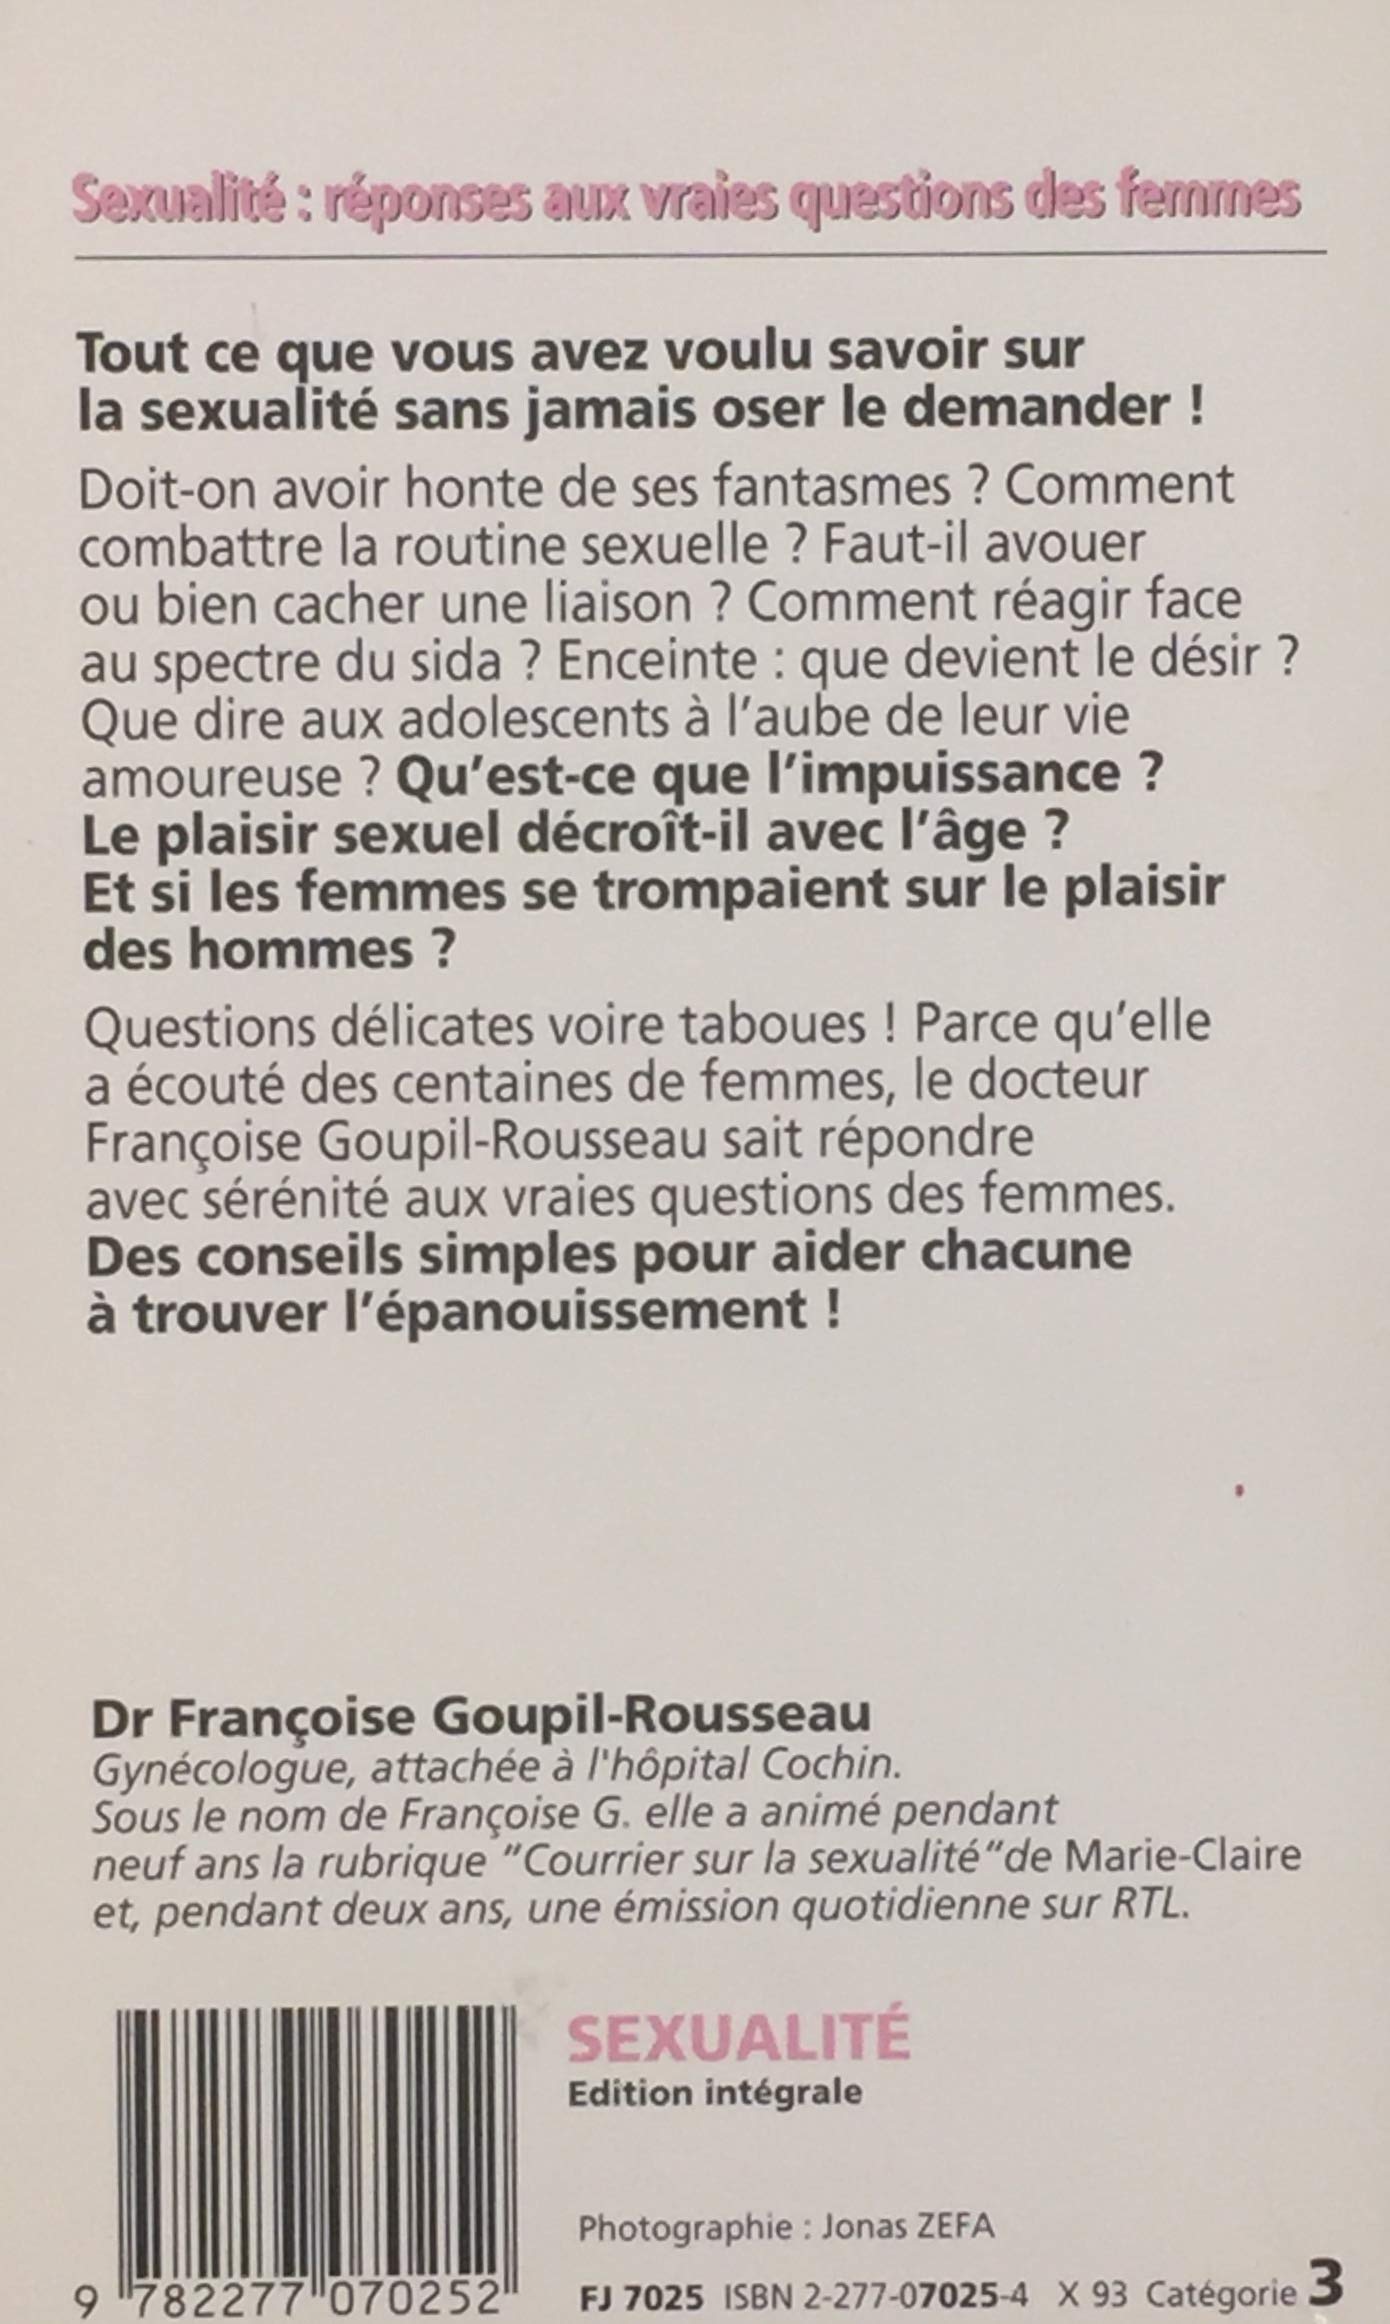 Sexualité : Réponses aux vraies questions des femmes (Dr Françoise Goupil-Rousseau)